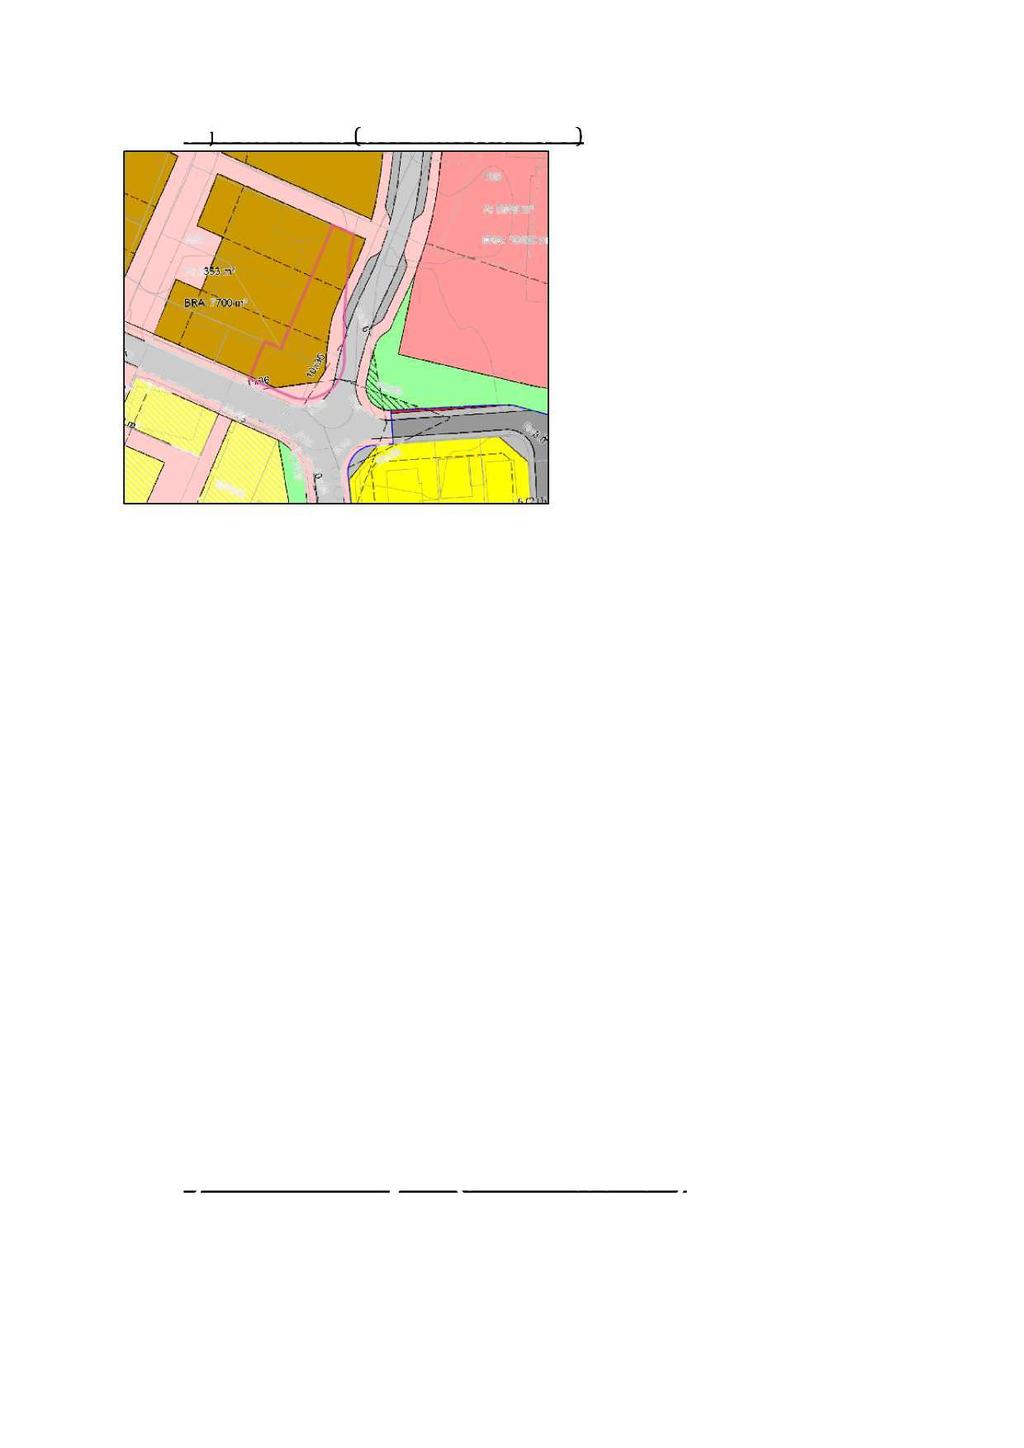 1.3.5 Giljes eiendom AS (brev datert 05.02.2014 ) Kart 3.2 Giljes Eiendom AS. Oppsummering av merknader 1. Planens grense mot sør - vest synes å gå inn på eiendom i større eller mindre grad. 2.